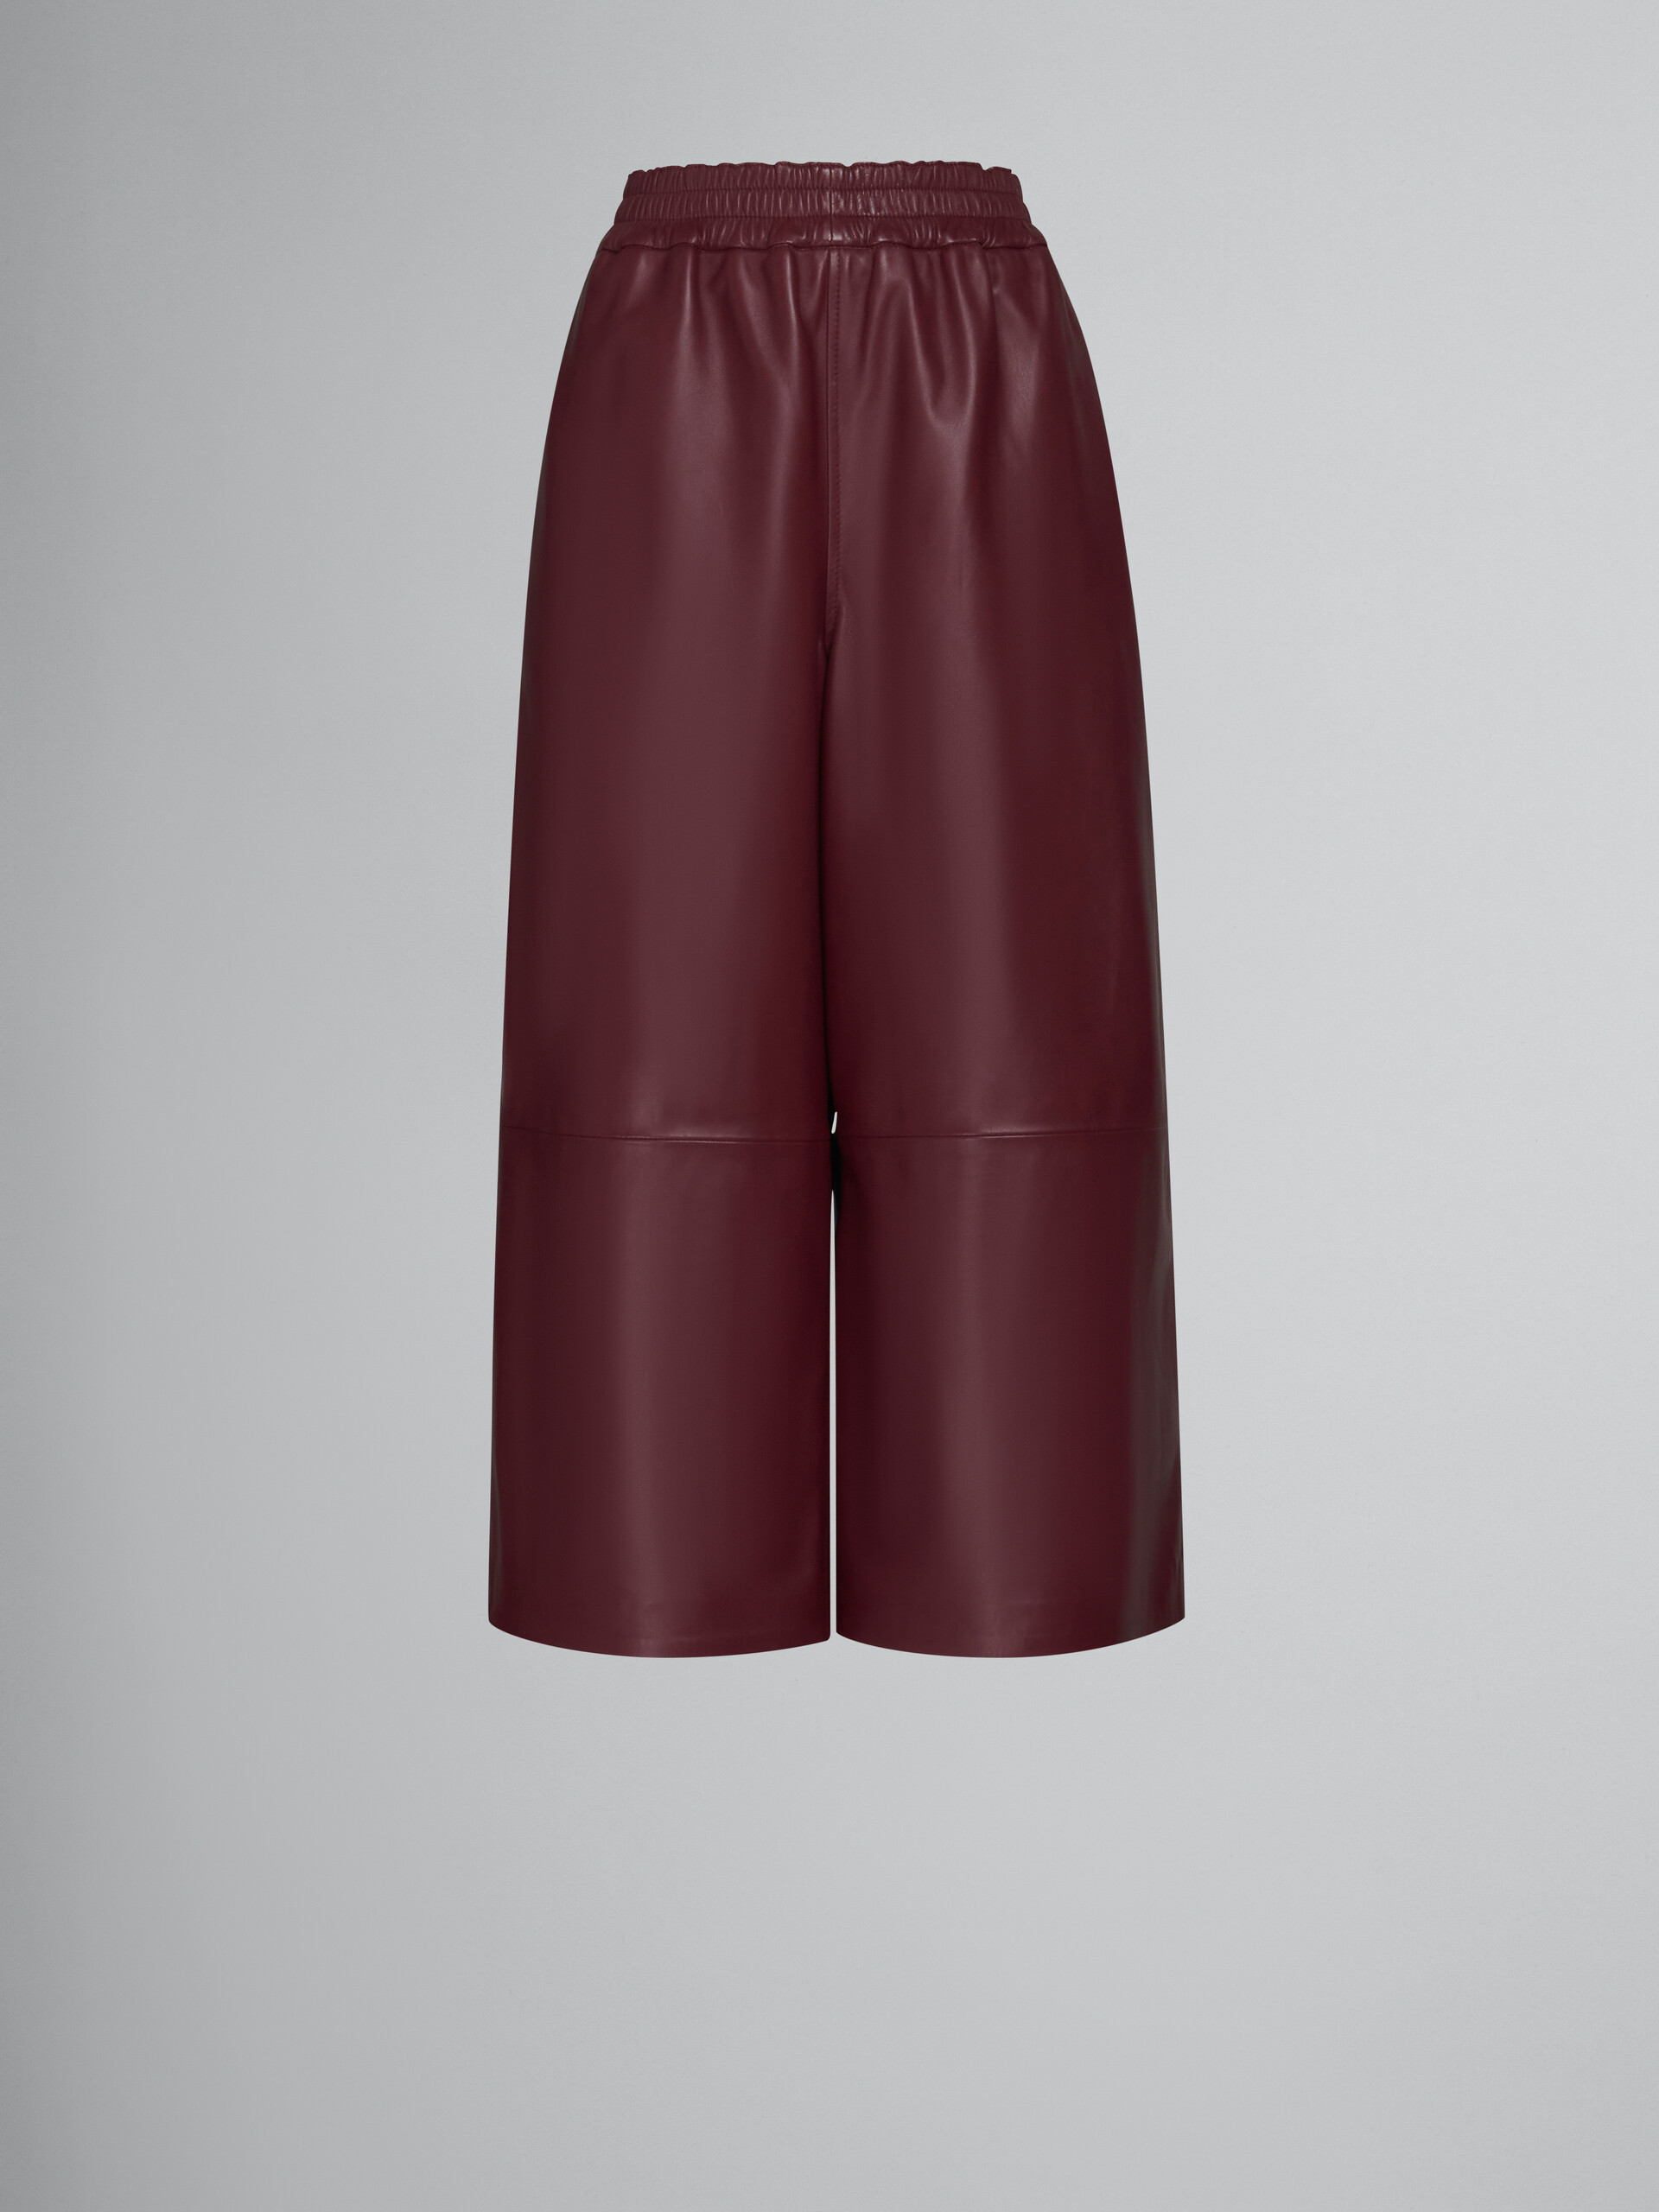 Pantalon ample en cuir rouge - Pantalons - Image 1